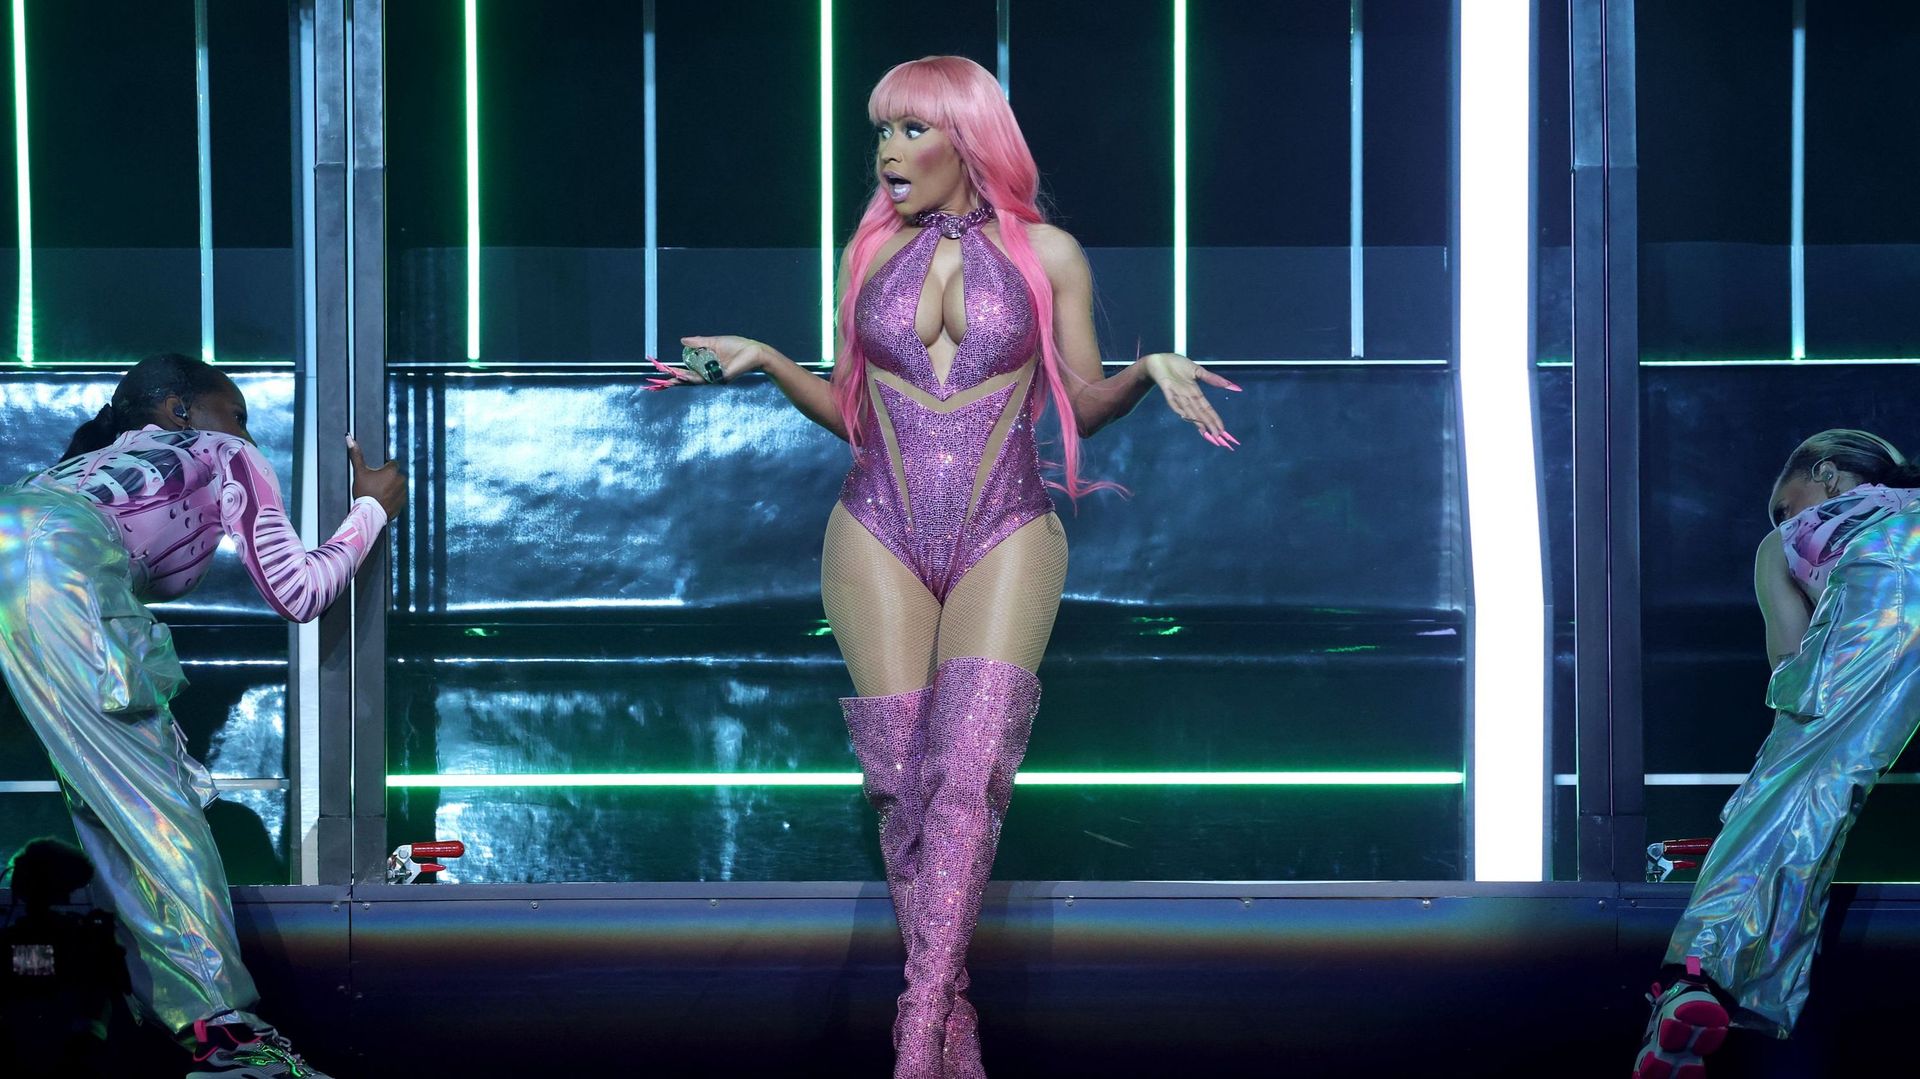 La contre-attaque de Nicki Minaj après avoir esquivé de justesse un projectile sur scène